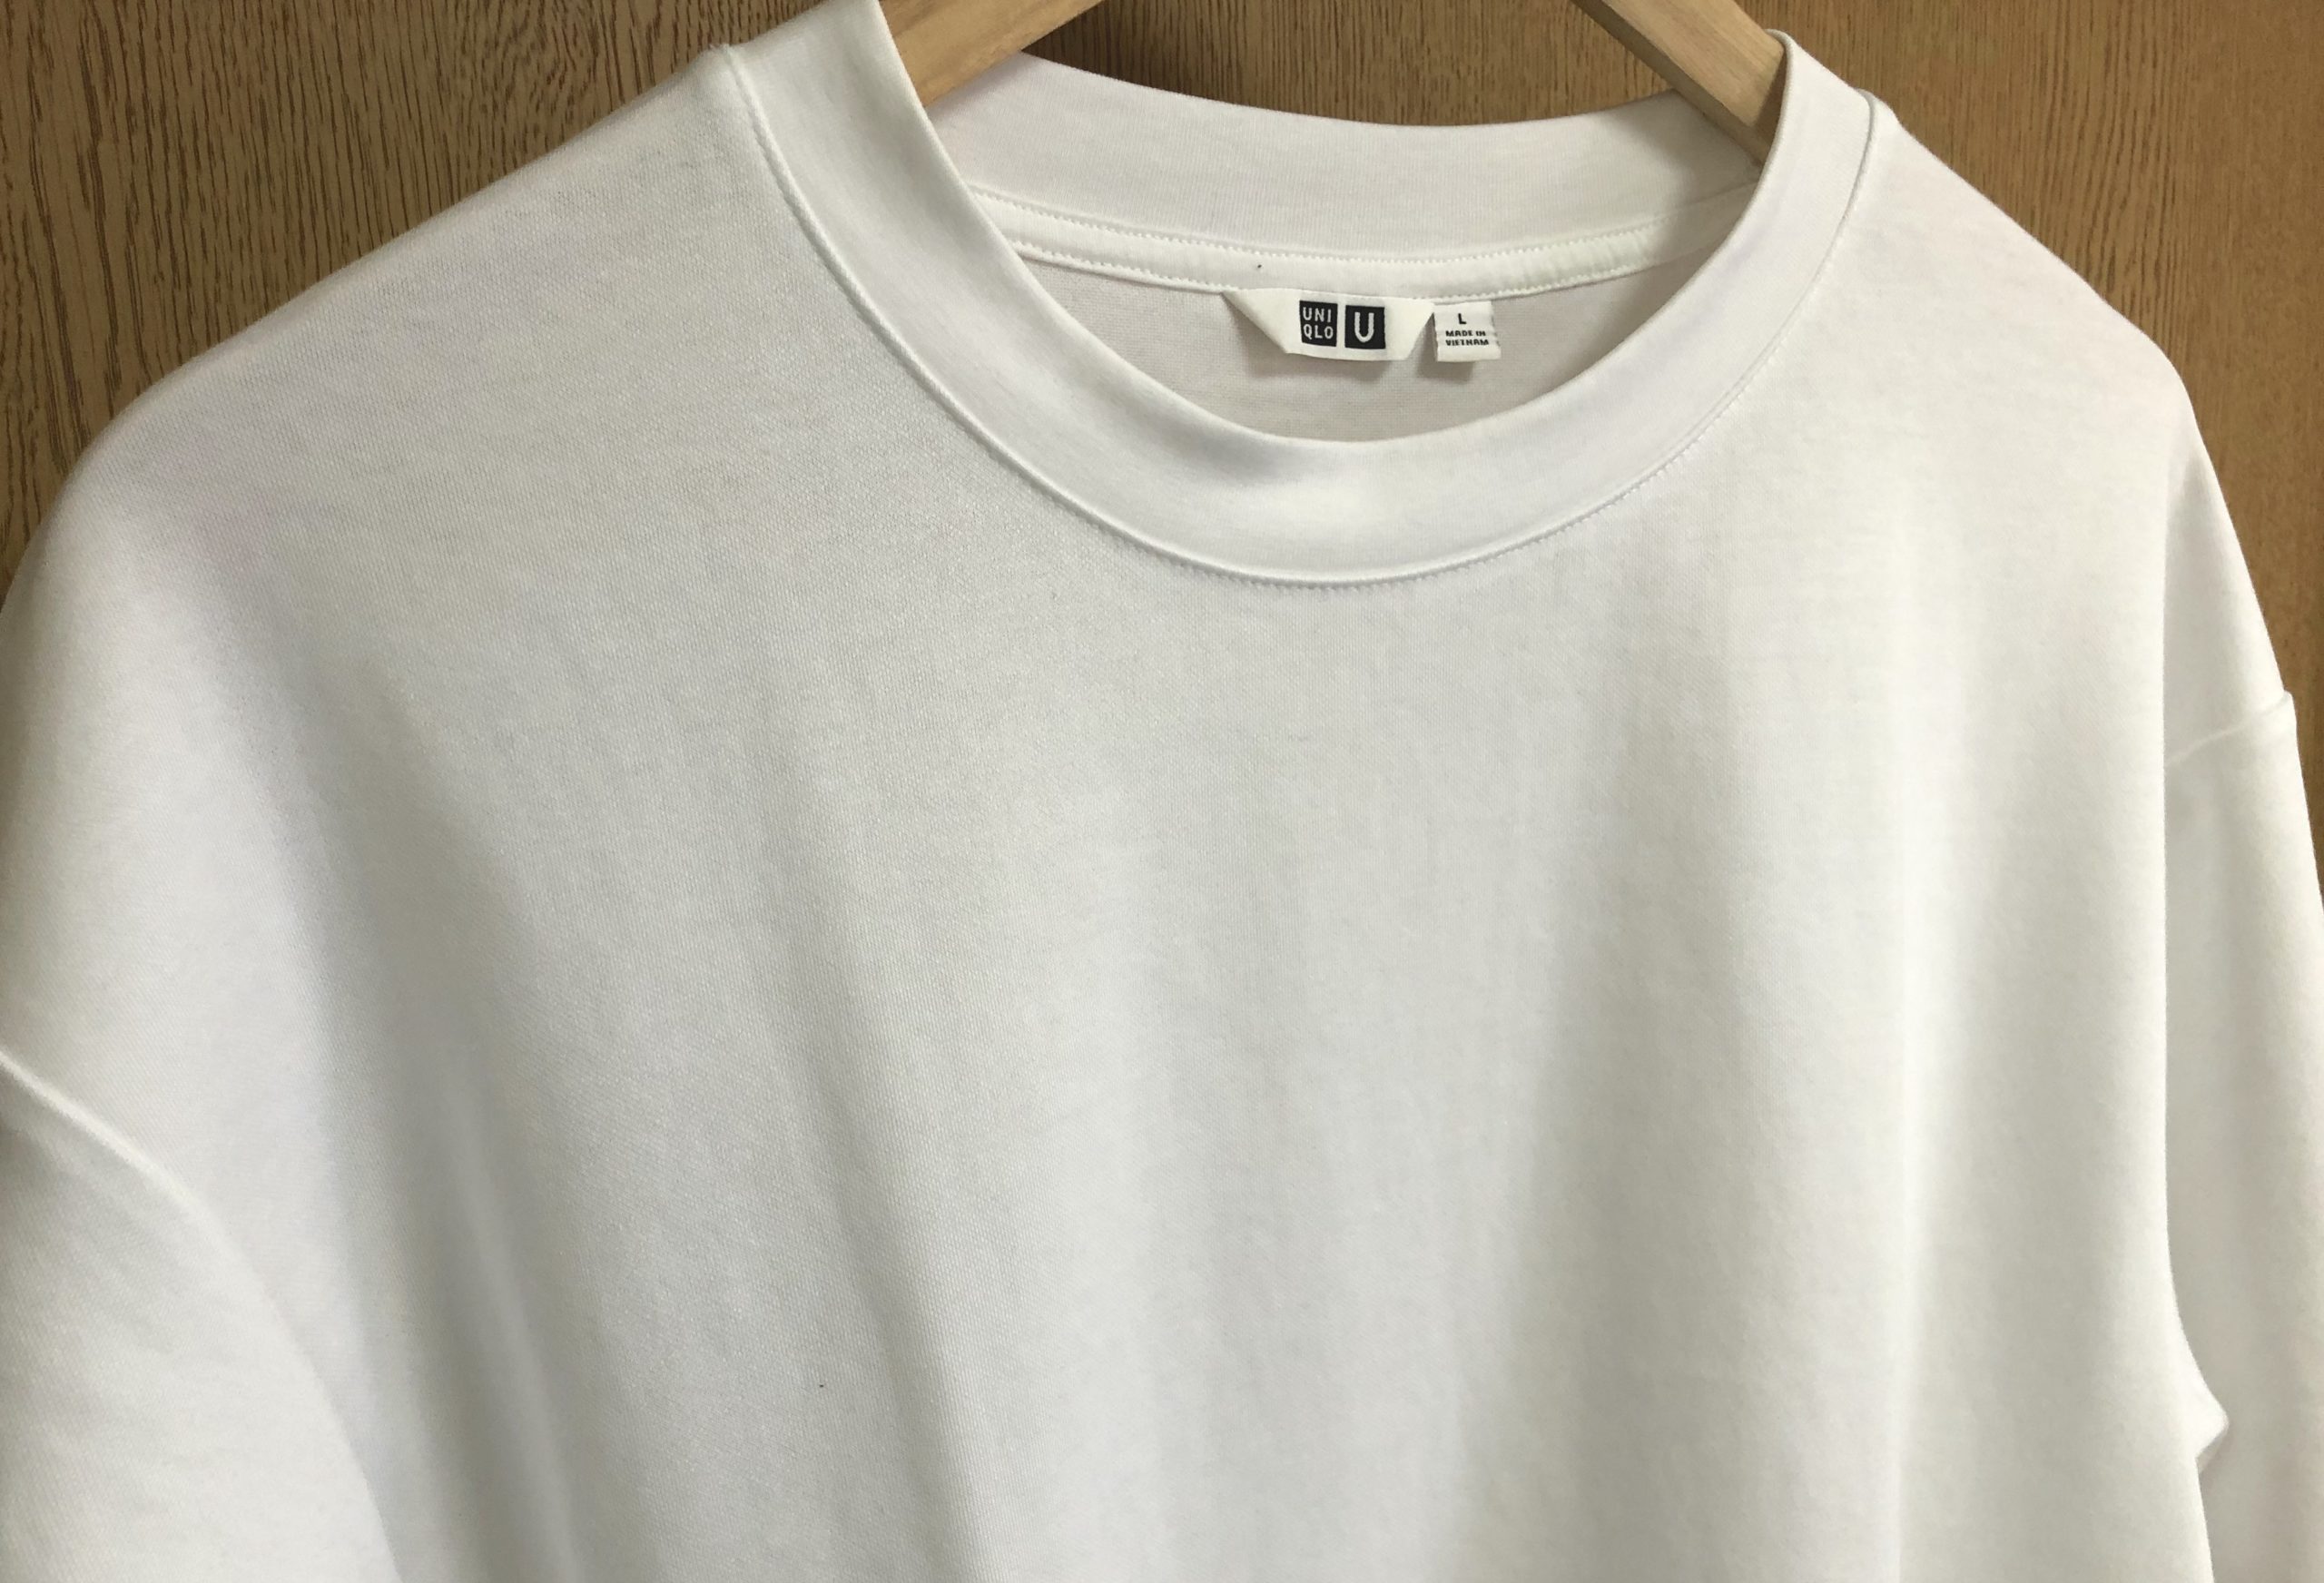 過大評価 ユニクロu エアリズムコットンオーバーサイズtシャツを徹底レビュー One Style Depot